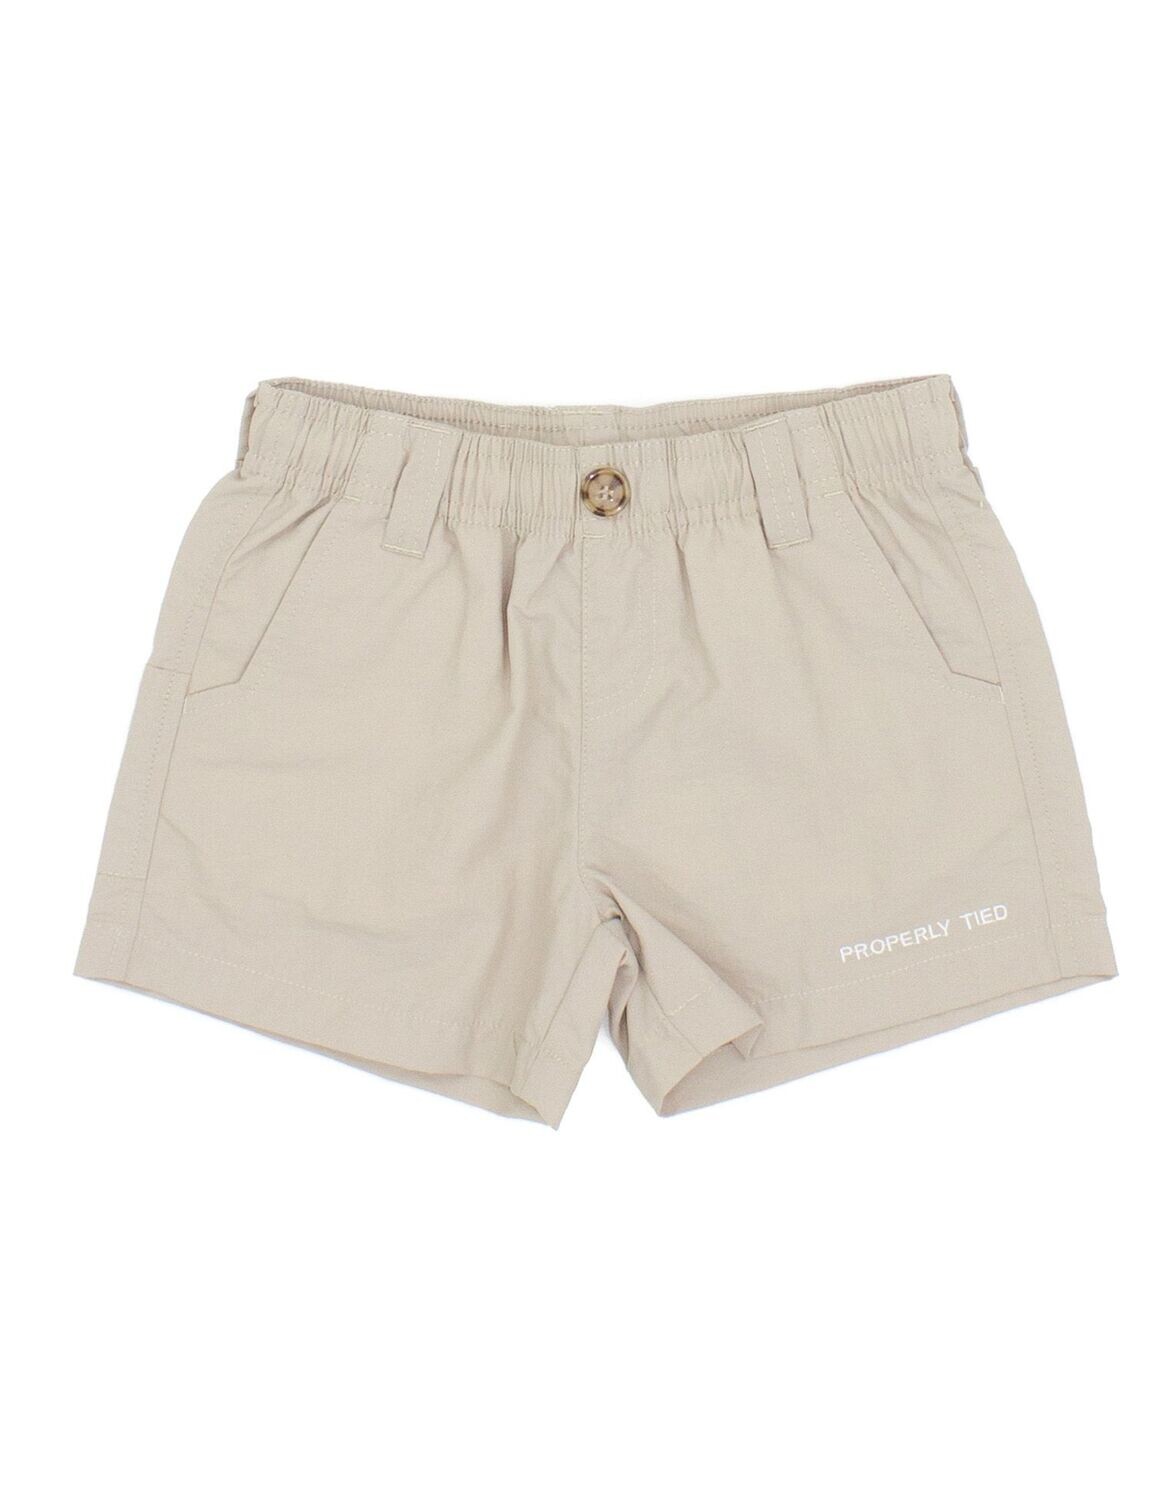 Khaki Mallard Shorts, Size: 2T